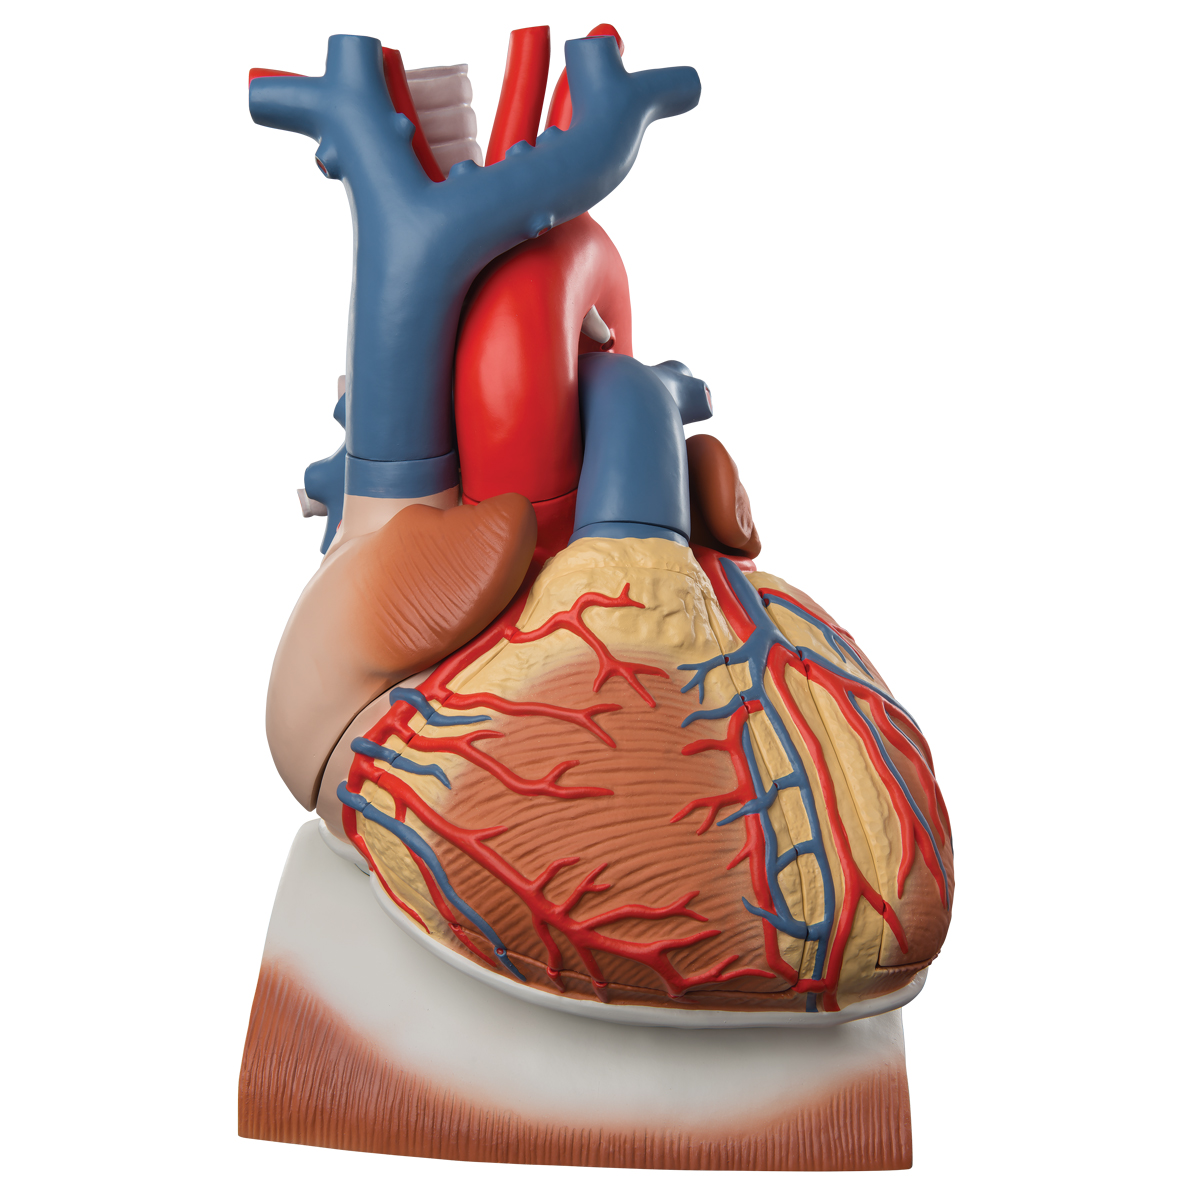 Herzmodell mit Zwerchfell, 3-fache Größe, 10-teilig - 3B Smart Anatomy, Bestellnummer 1008547, VD251, 3B Scientific